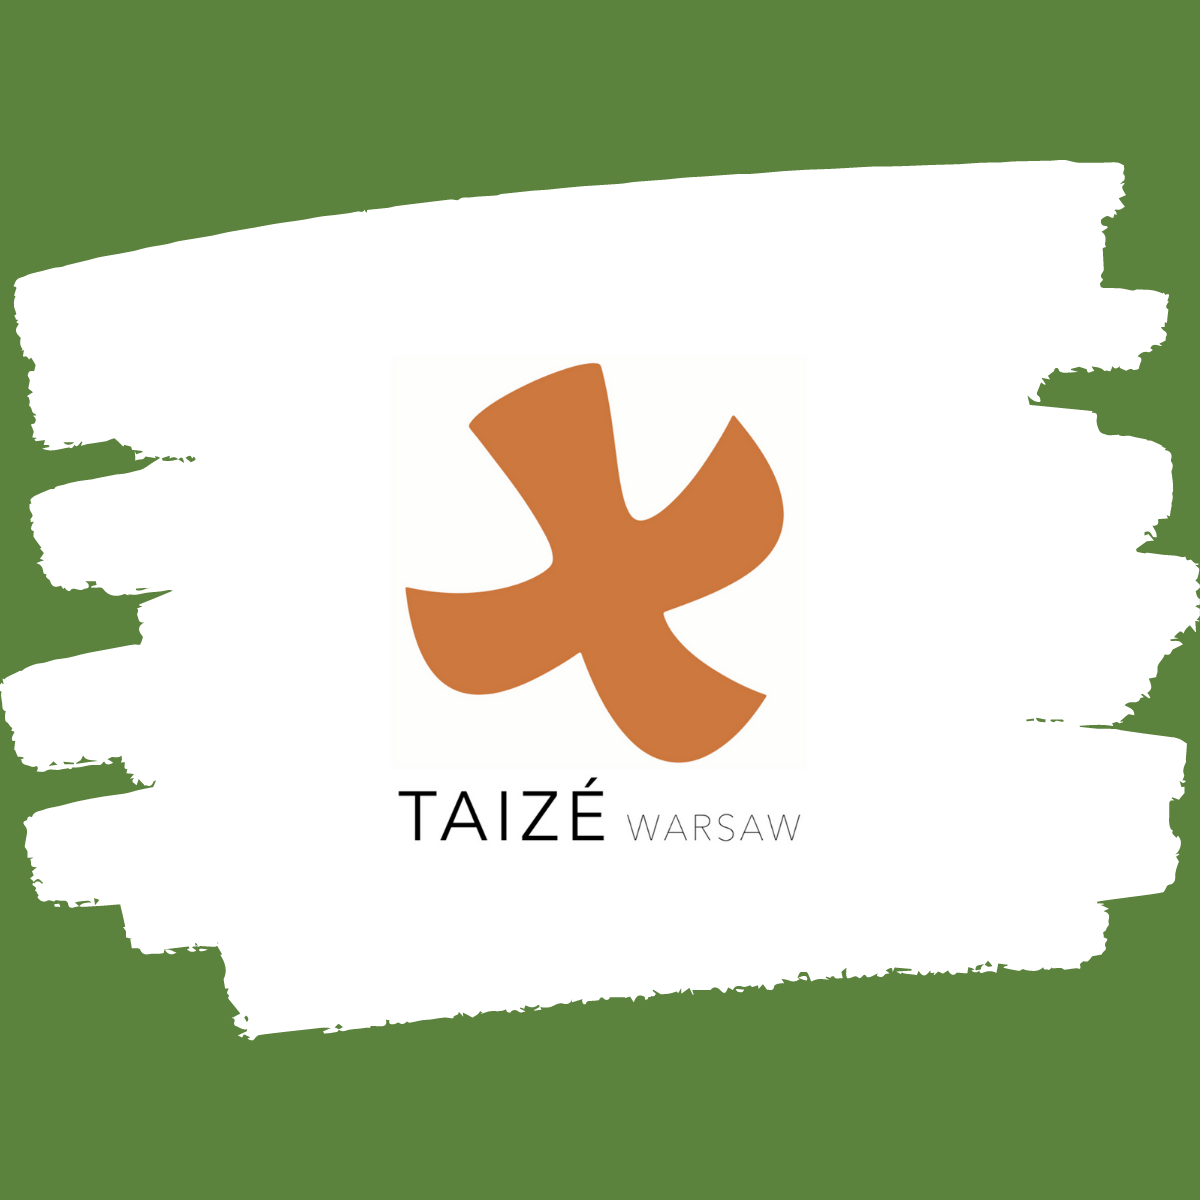 Taize Warsaw